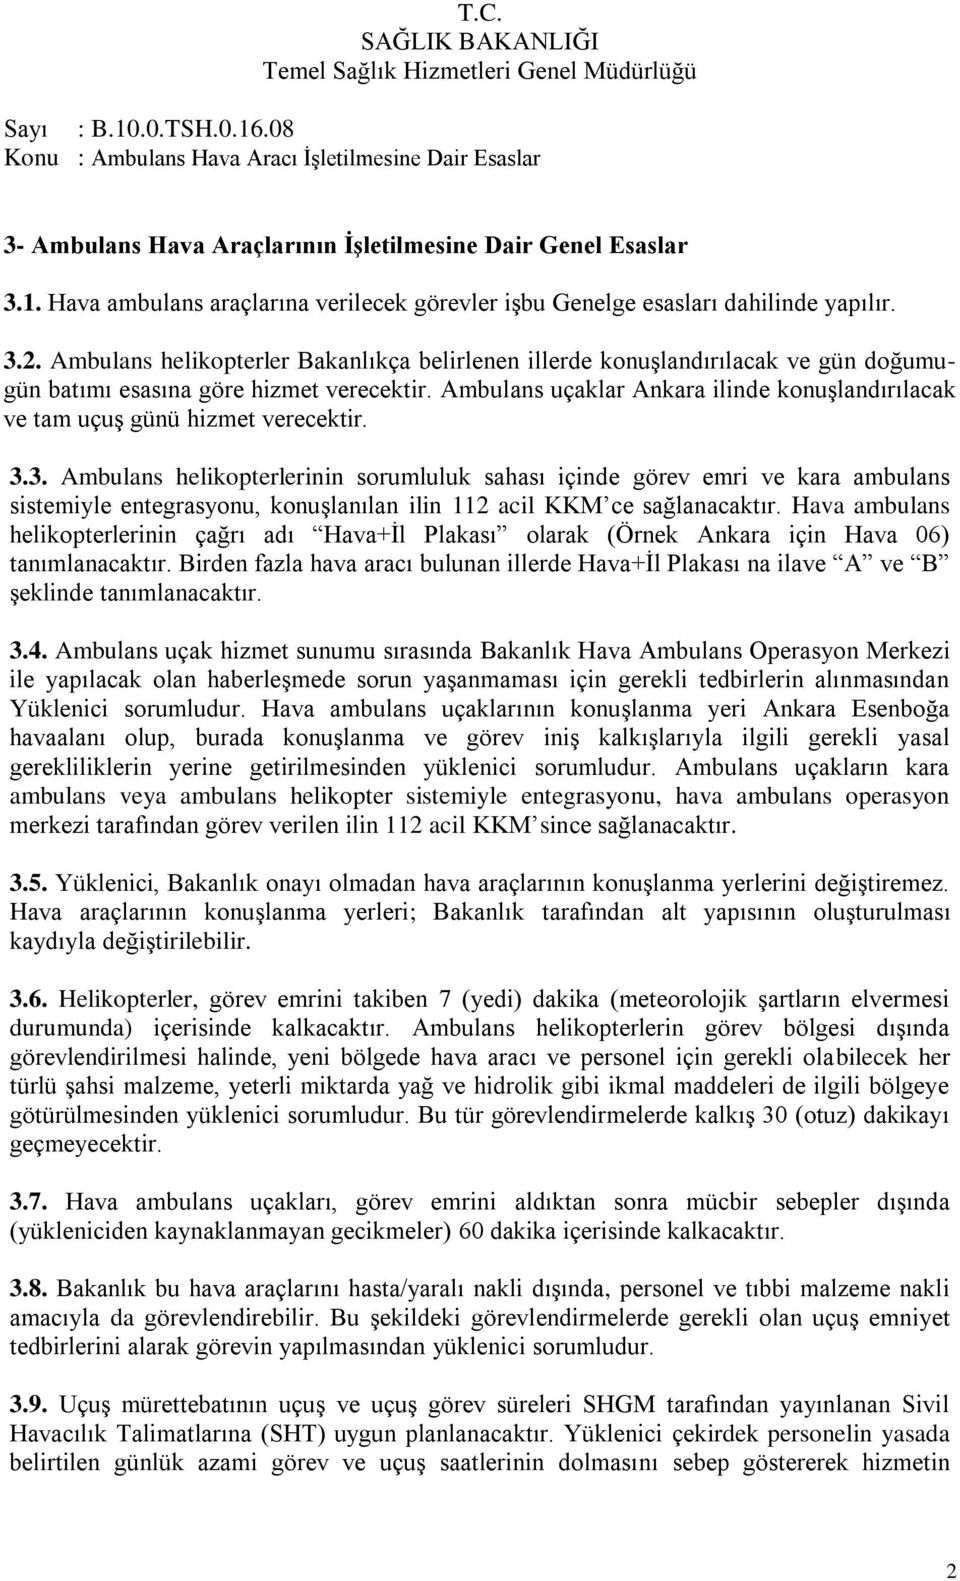 Ambulans uçaklar Ankara ilinde konuģlandırılacak ve tam uçuģ günü hizmet verecektir. 3.